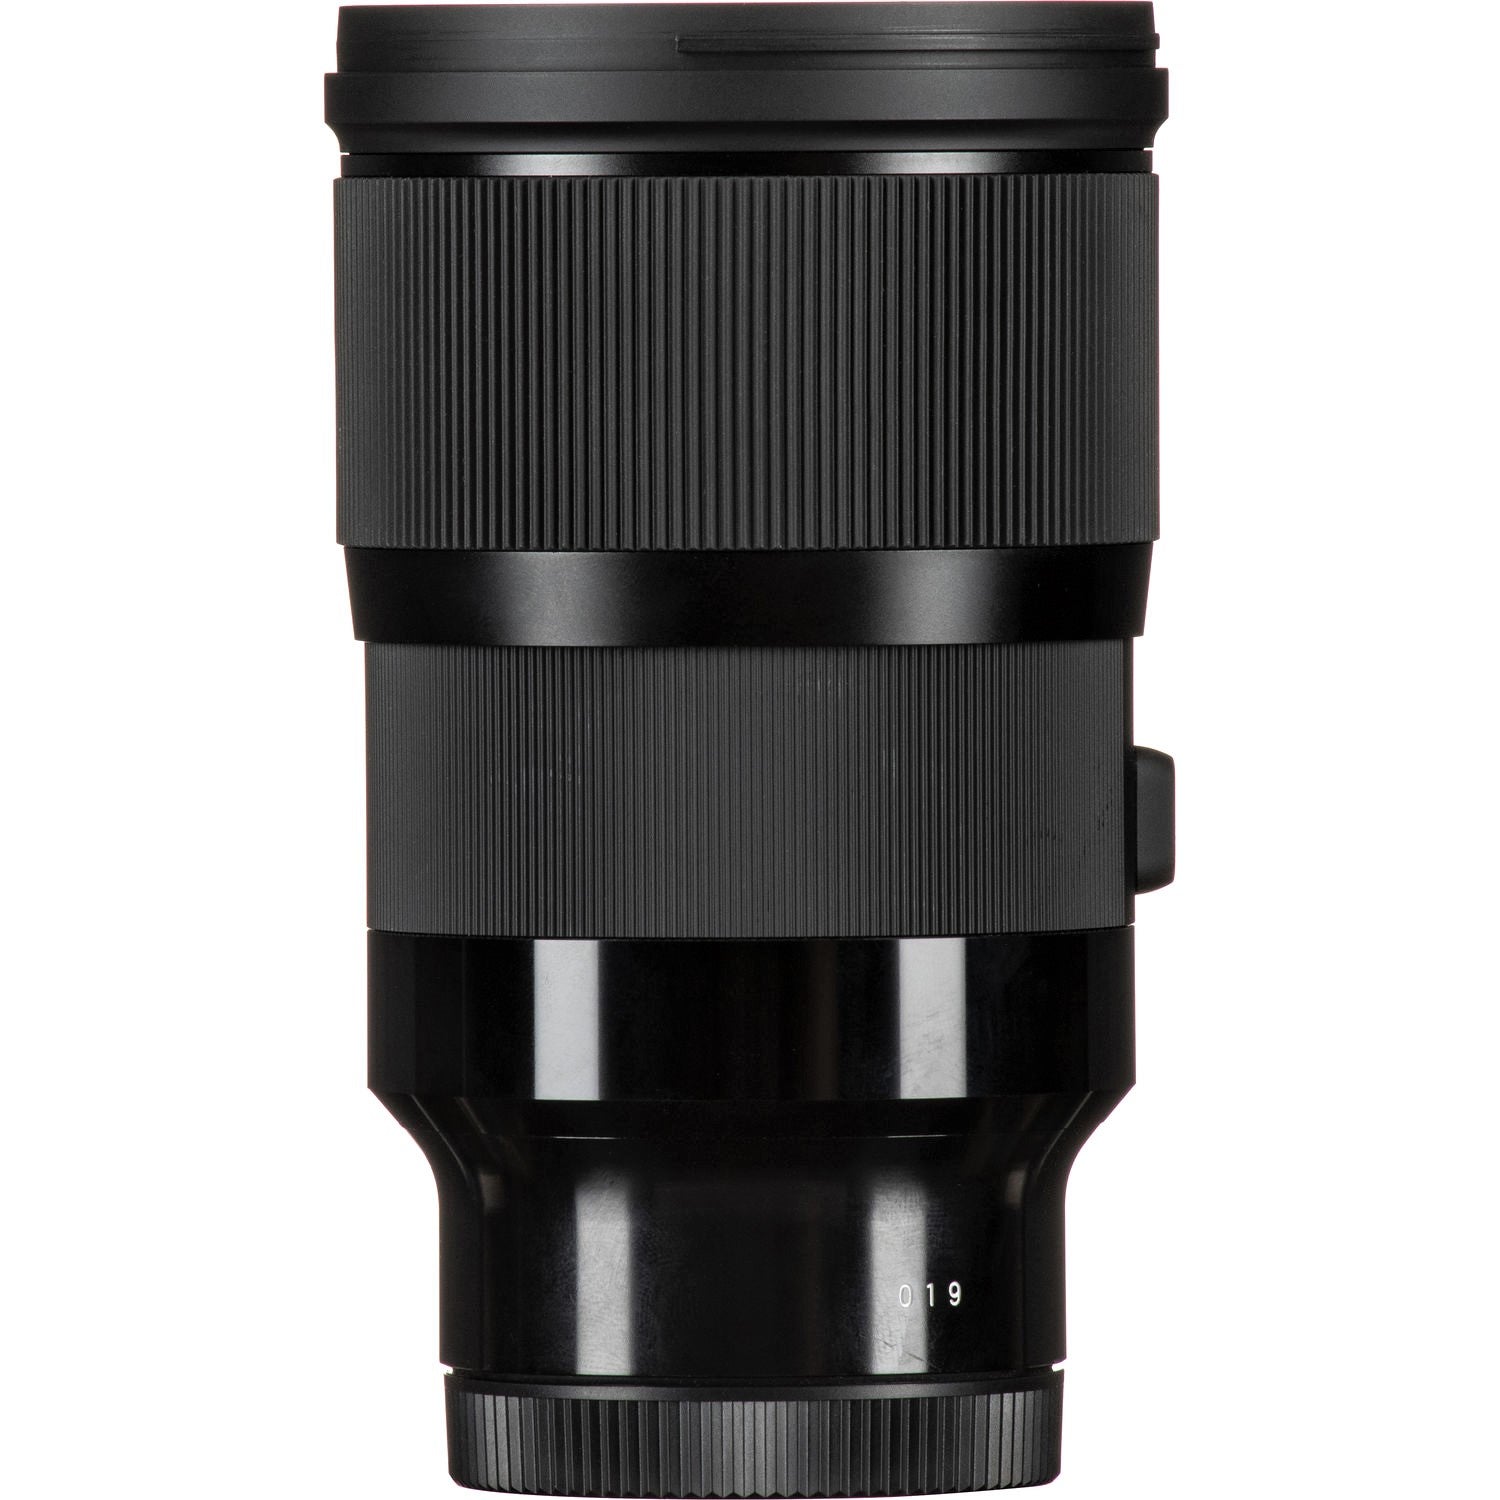 Sigma 28mm F1.4 DG HSM Art Lens for Sony E